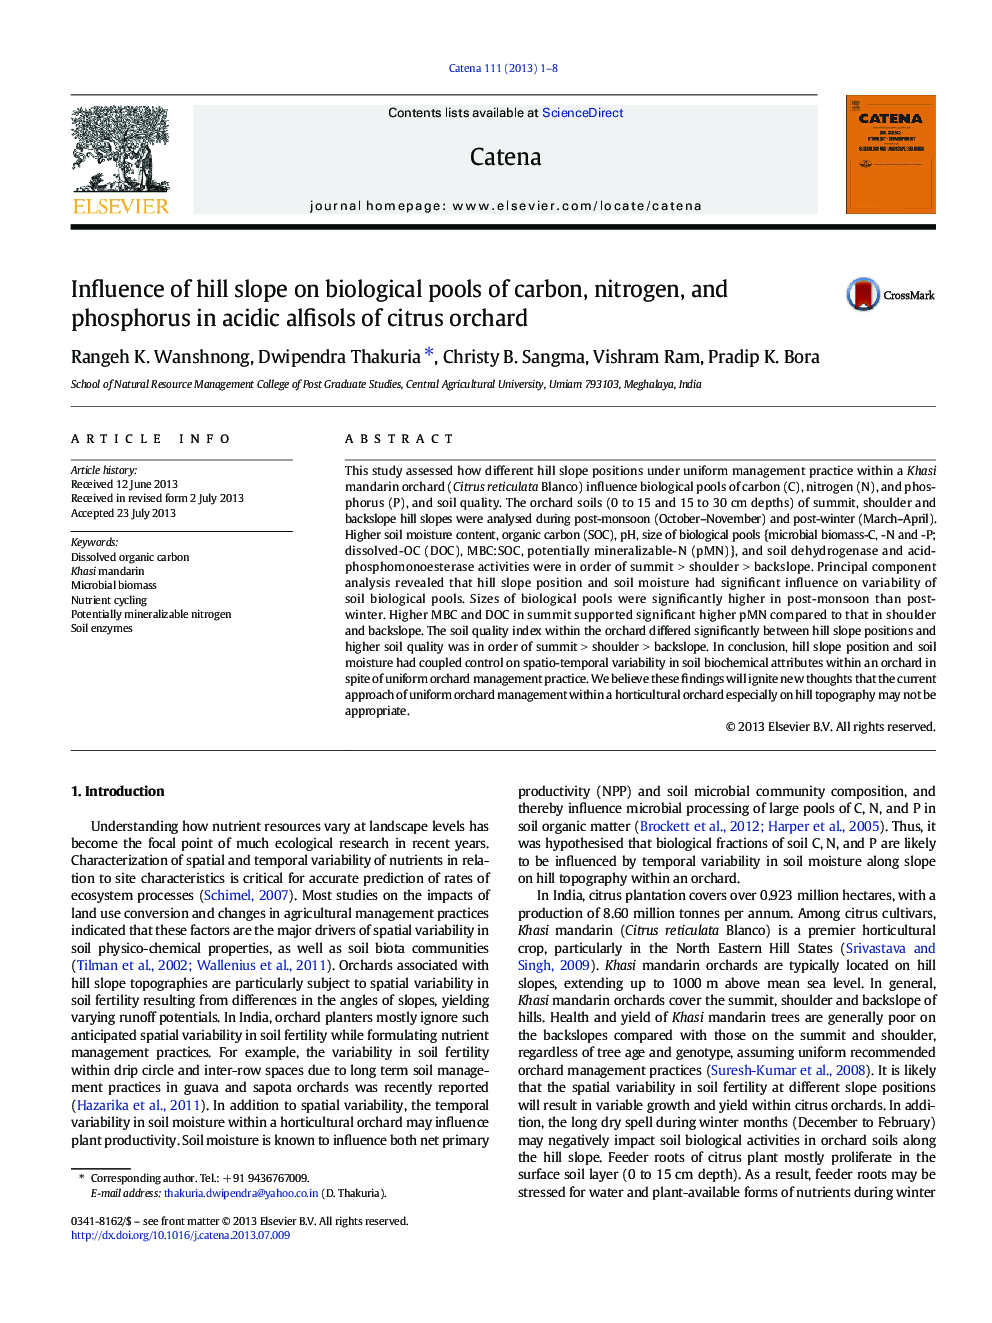 تأثیر شیب تپه روی استخرهای بیولوژیکی کربن، نیتروژن و فسفر در آلبسینهای اسیدی باغی مرکبات 